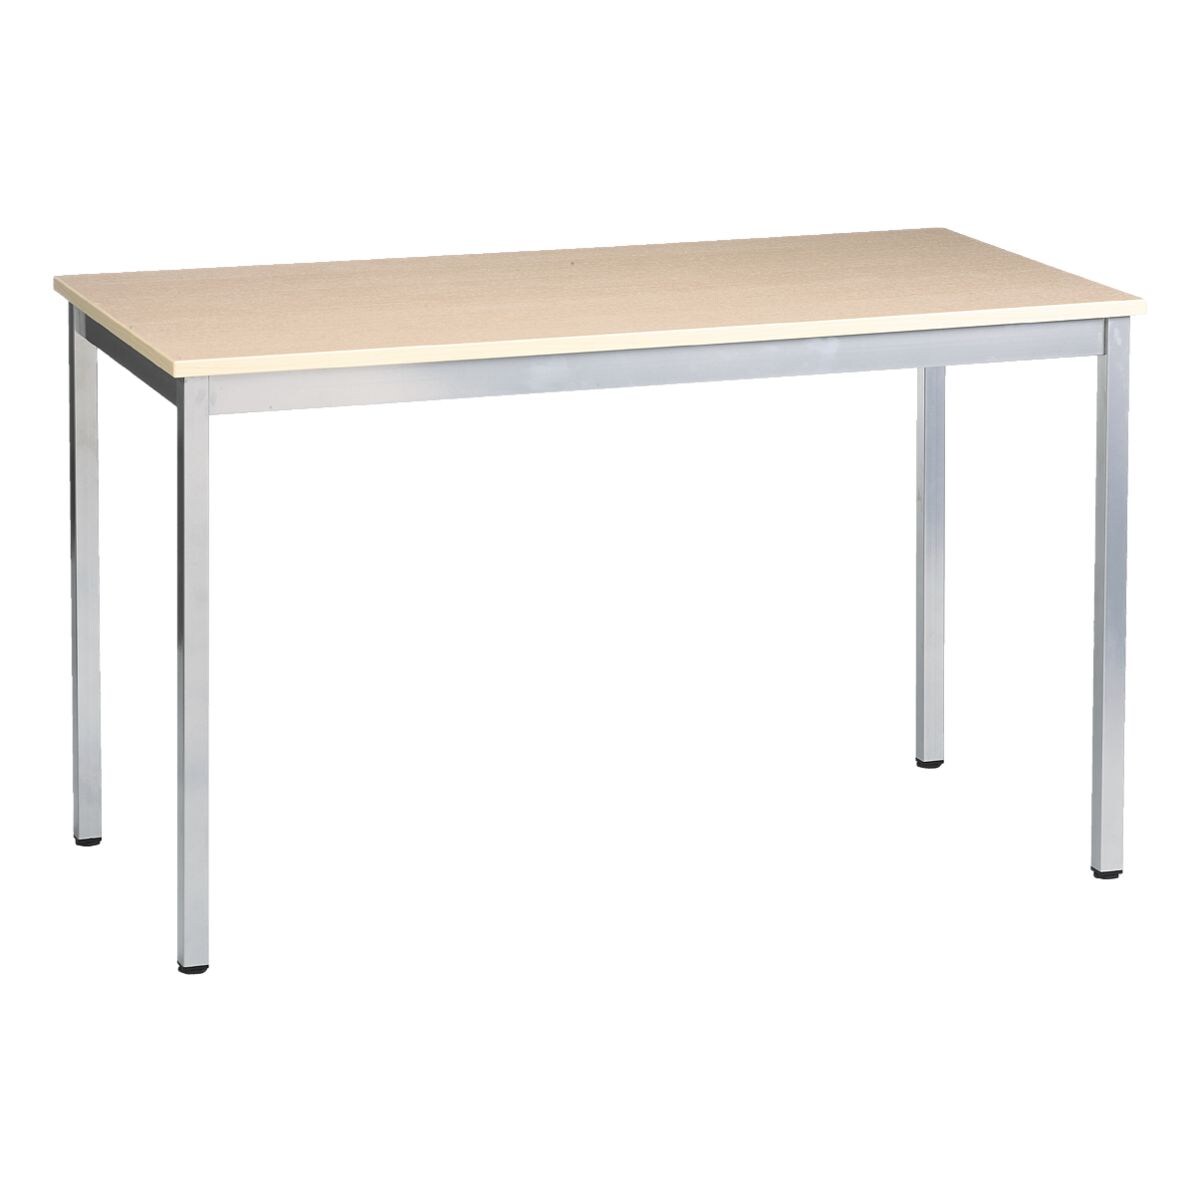 SODEMATUB bureau Programme table universel 180 cm, 4 pieds couleur aluminium